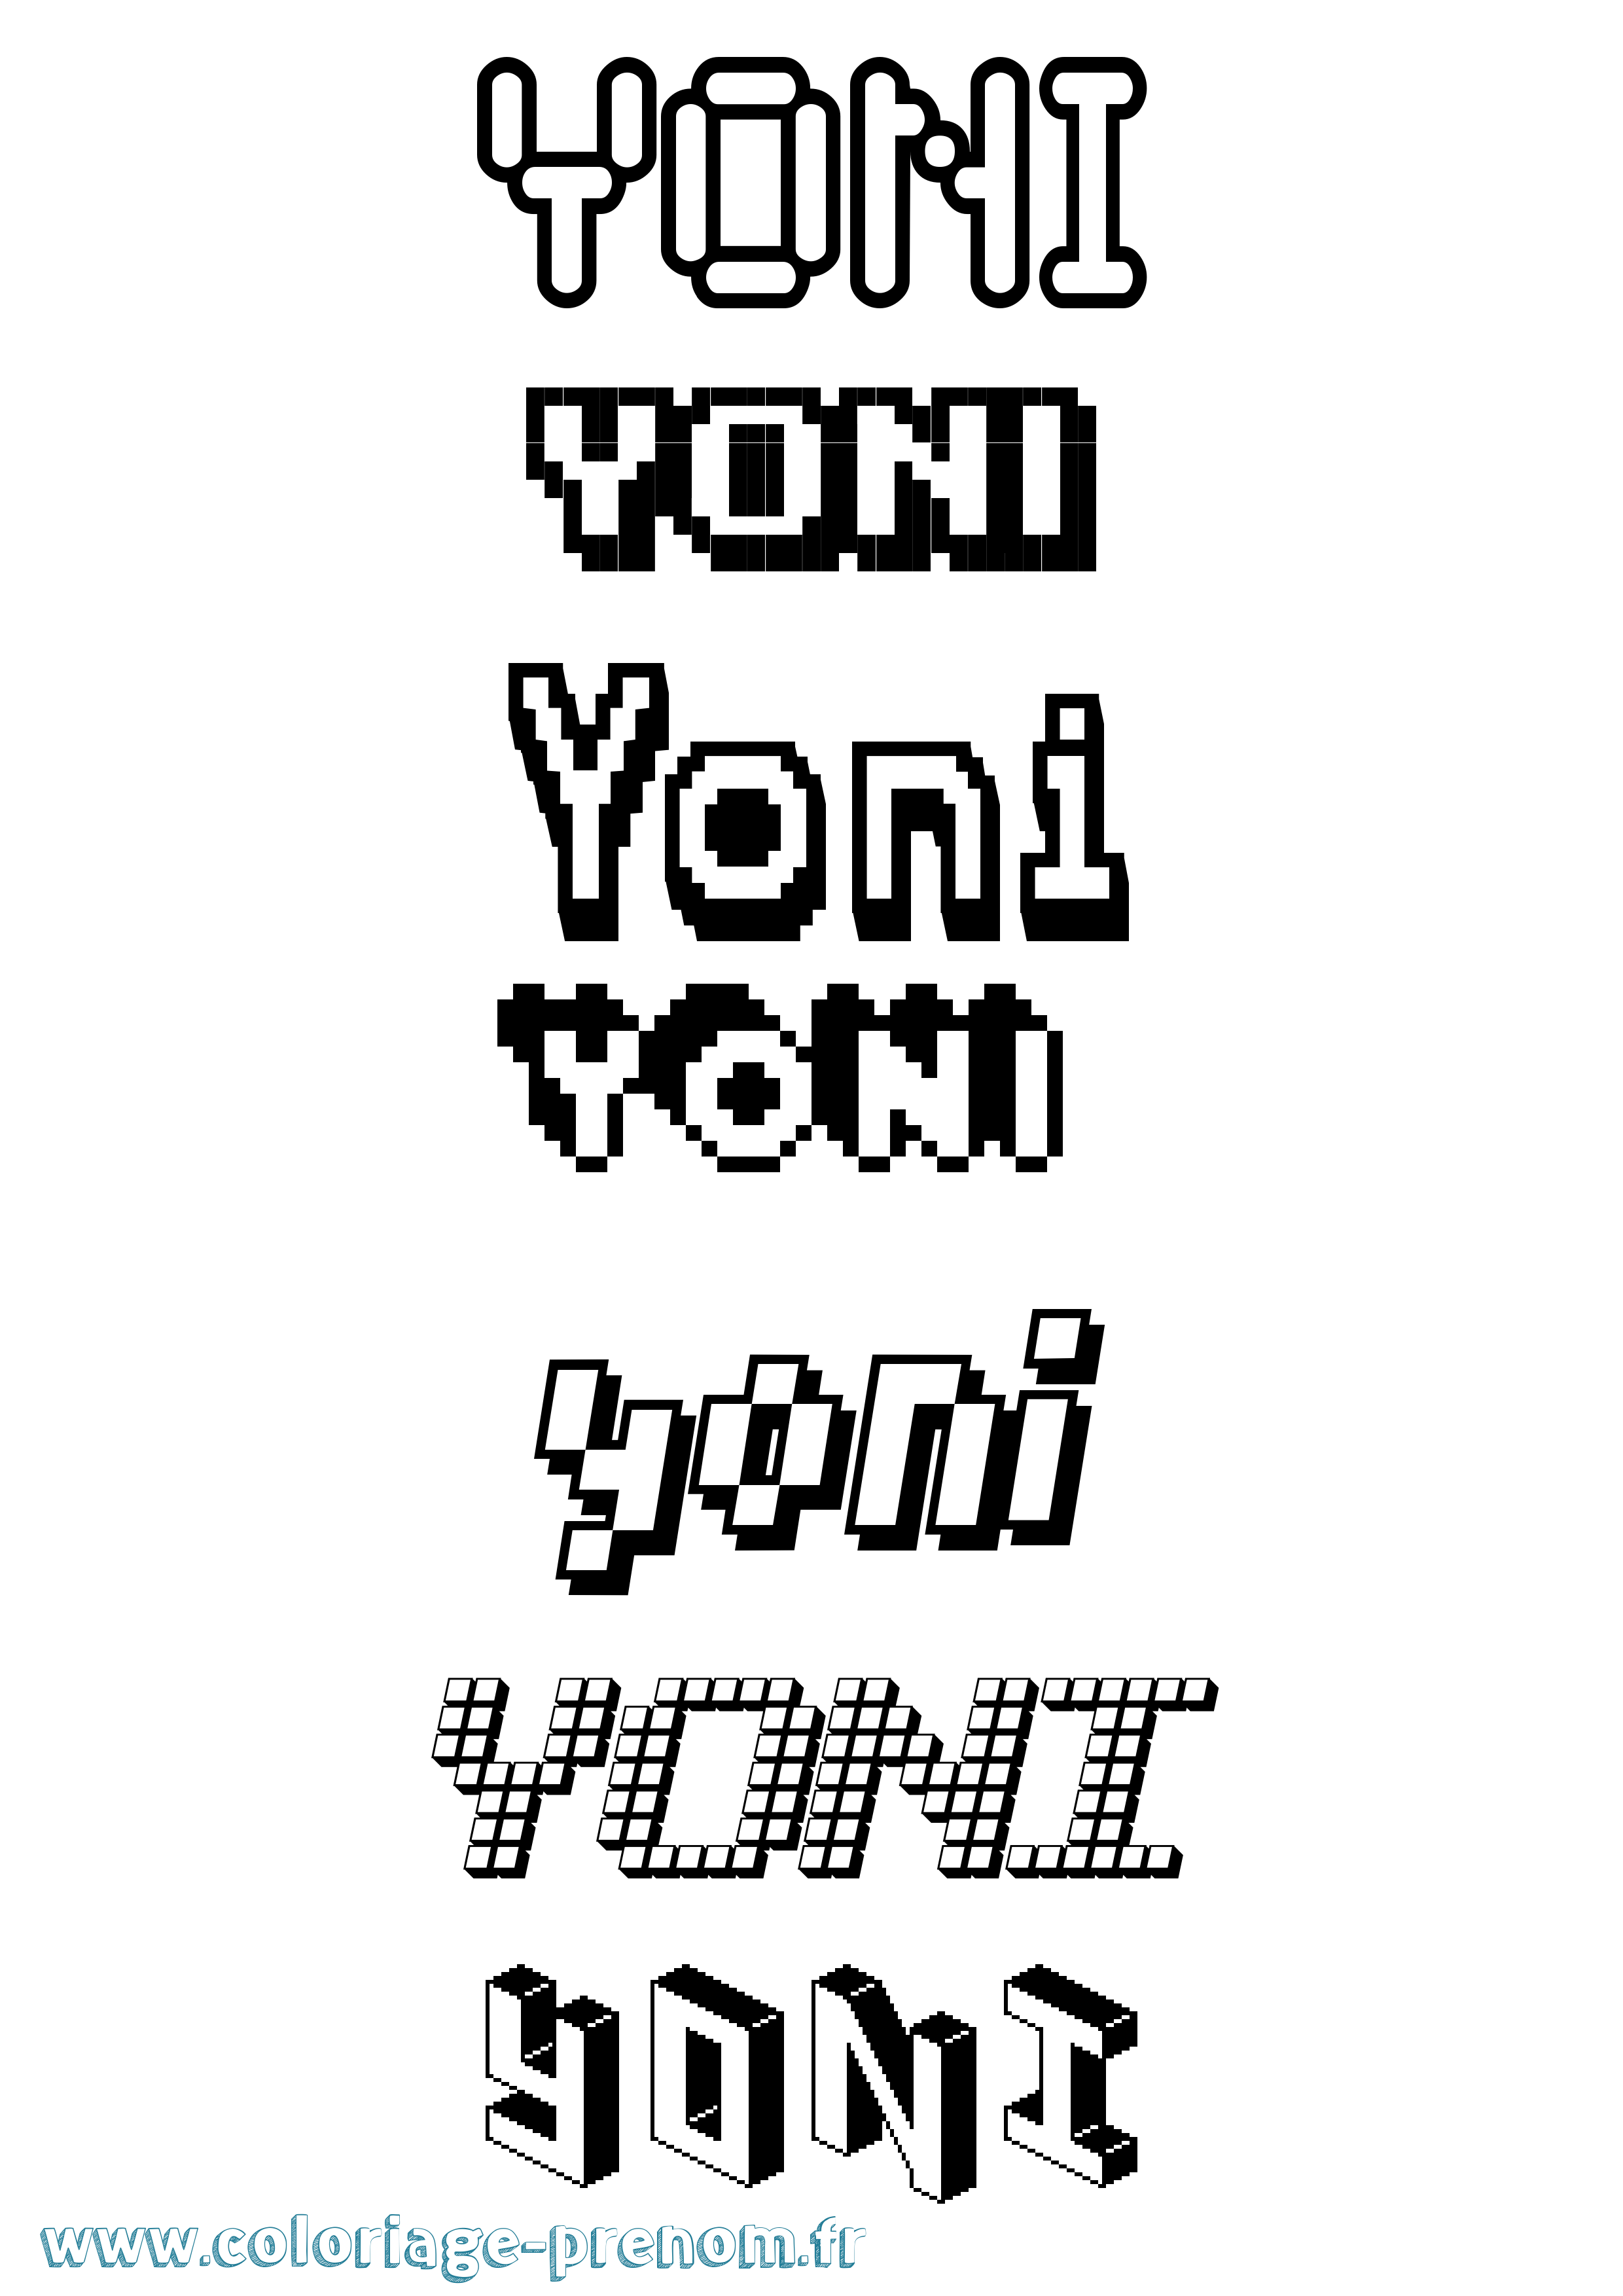 Coloriage prénom Yoni